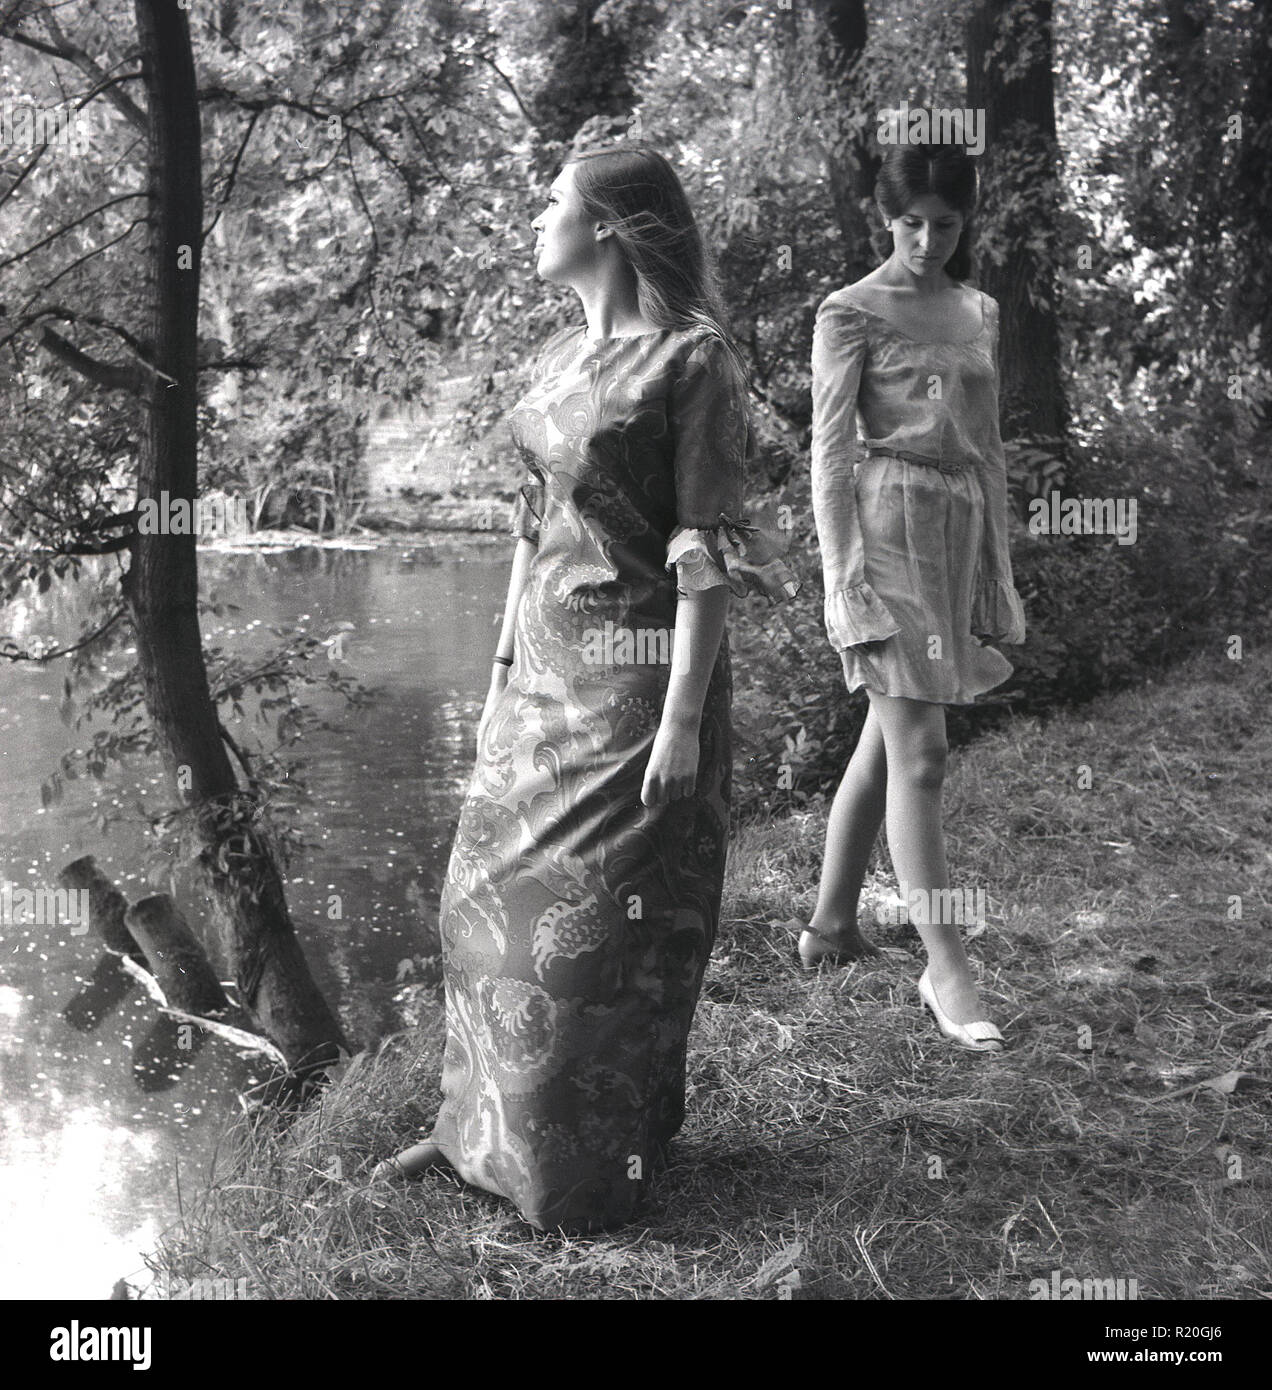 1967, deux jeunes filles attracive porter des robes à motifs floral court et à un défilé de tirer par un lac dans une forêt, England, UK. Ce style bohème hippie ou est devenu populaire à la fin des années 60 que la culture des jeunes a commencé à embrasser 'flower power' et musique psychédélique. Banque D'Images